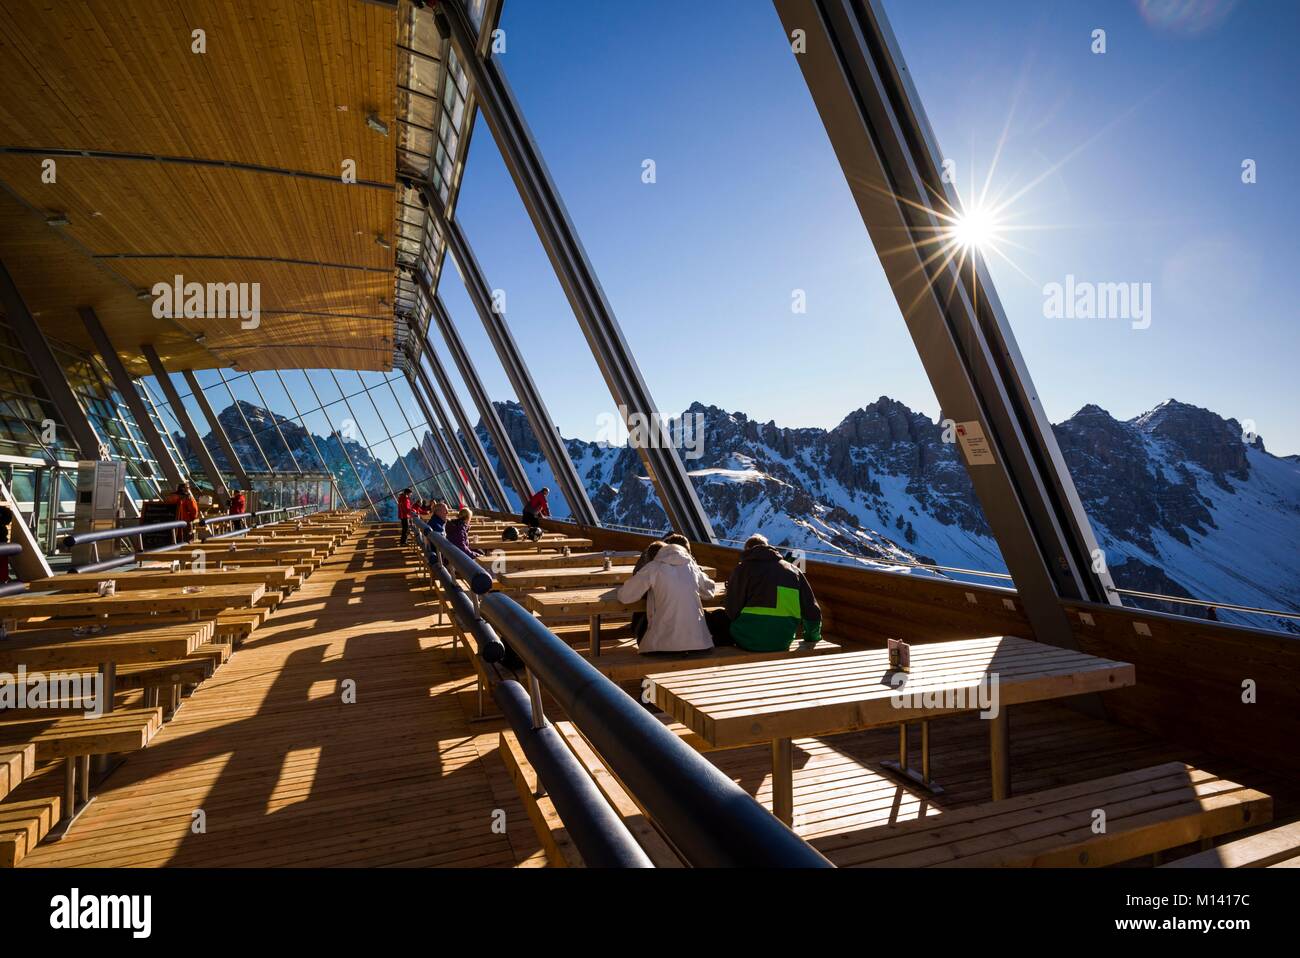 Autriche, Tyrol, Axamer Lizum, village d'accueil des Jeux Olympiques d'hiver de 1964 et 1976, le Restaurant Haus Hoadl coin repas, d'une altitude de 2340 mètres, l'hiver Banque D'Images